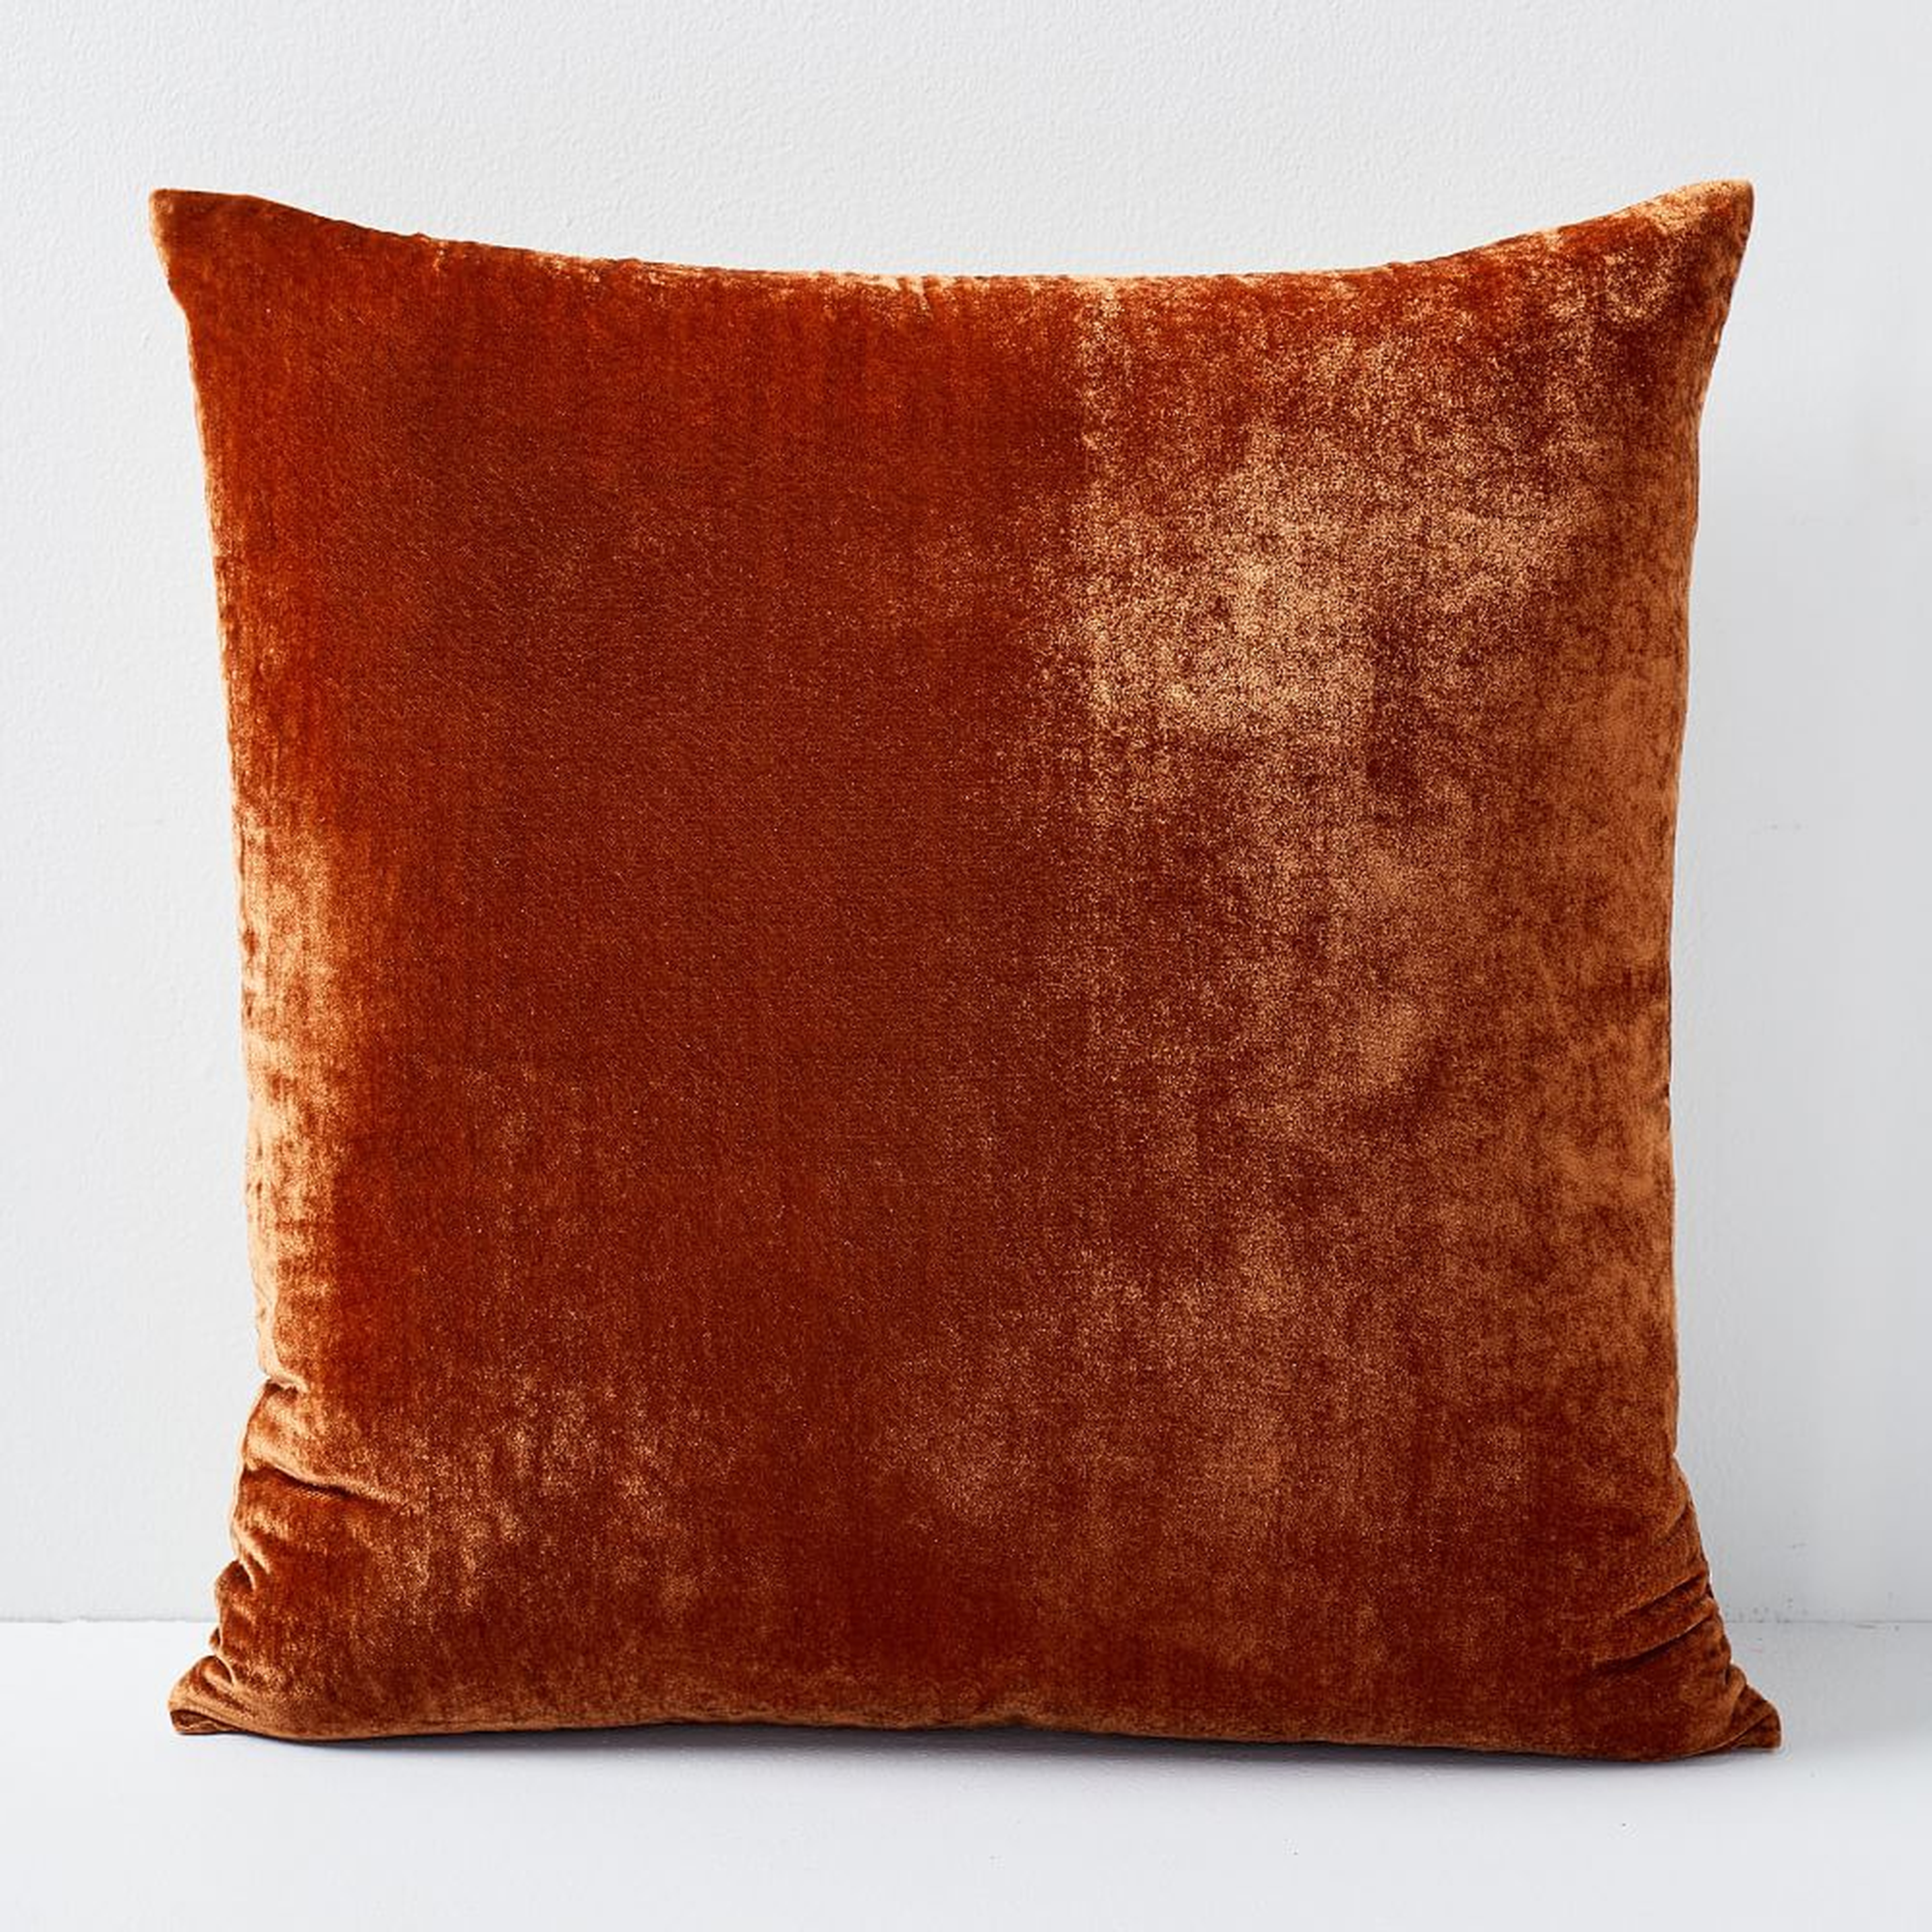 Lush Velvet Pillow Cover, Copper, 20"x20" - West Elm